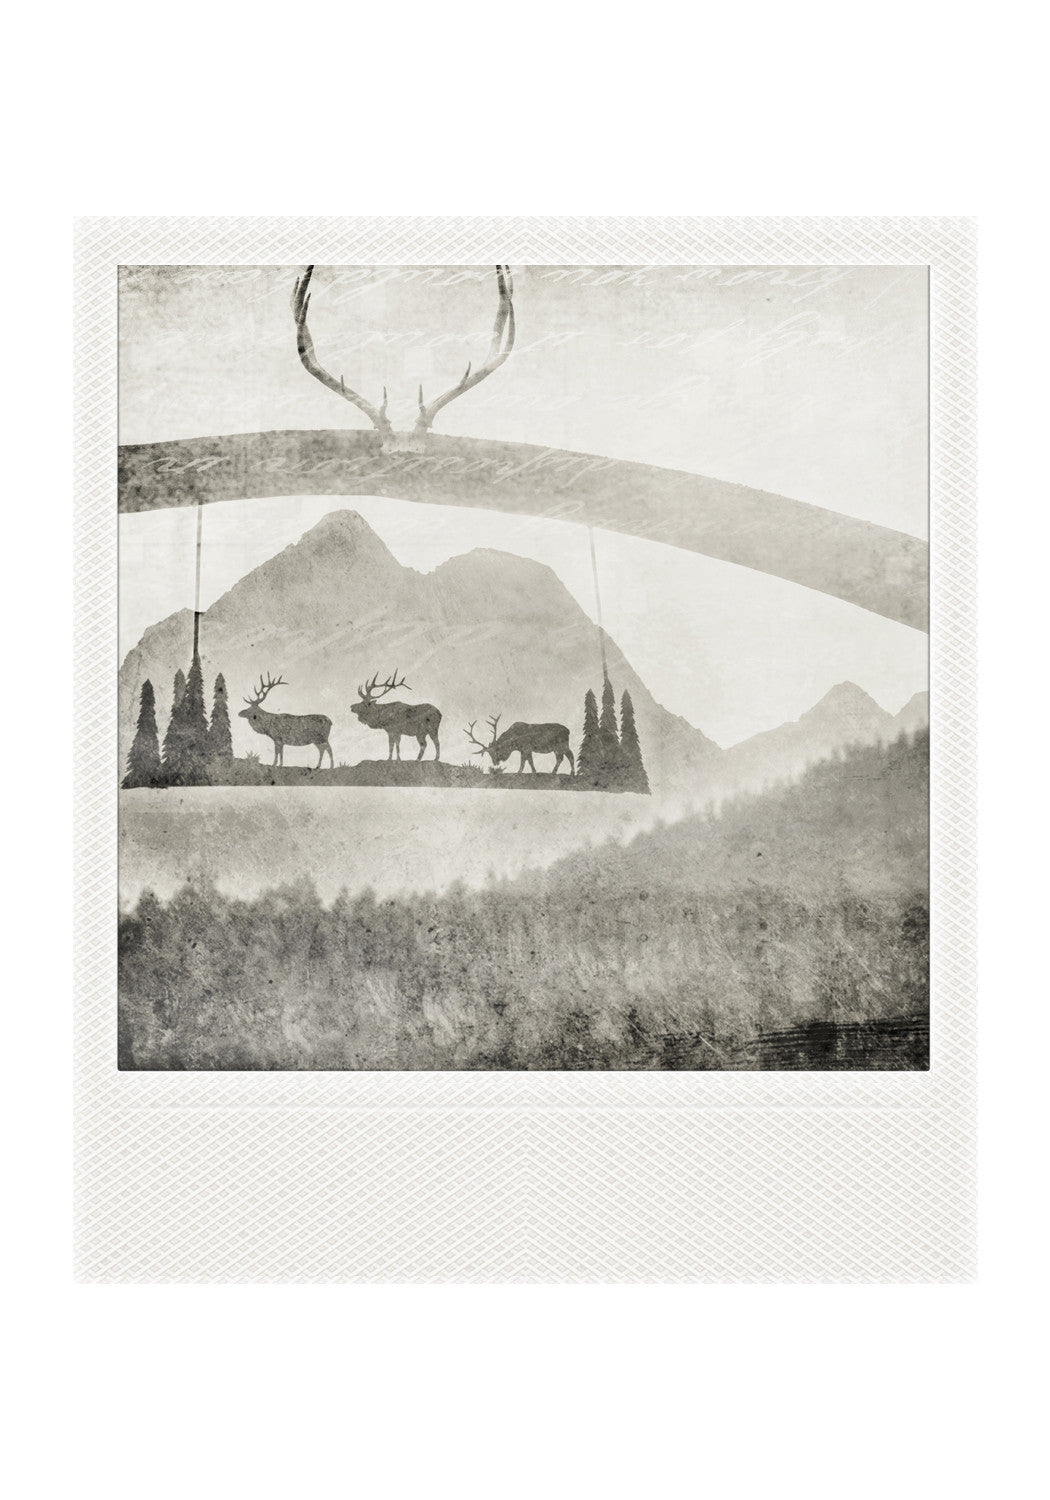 VENTA<br> Imán Polaroid metálico<br> Puesto de rancho + Montañas